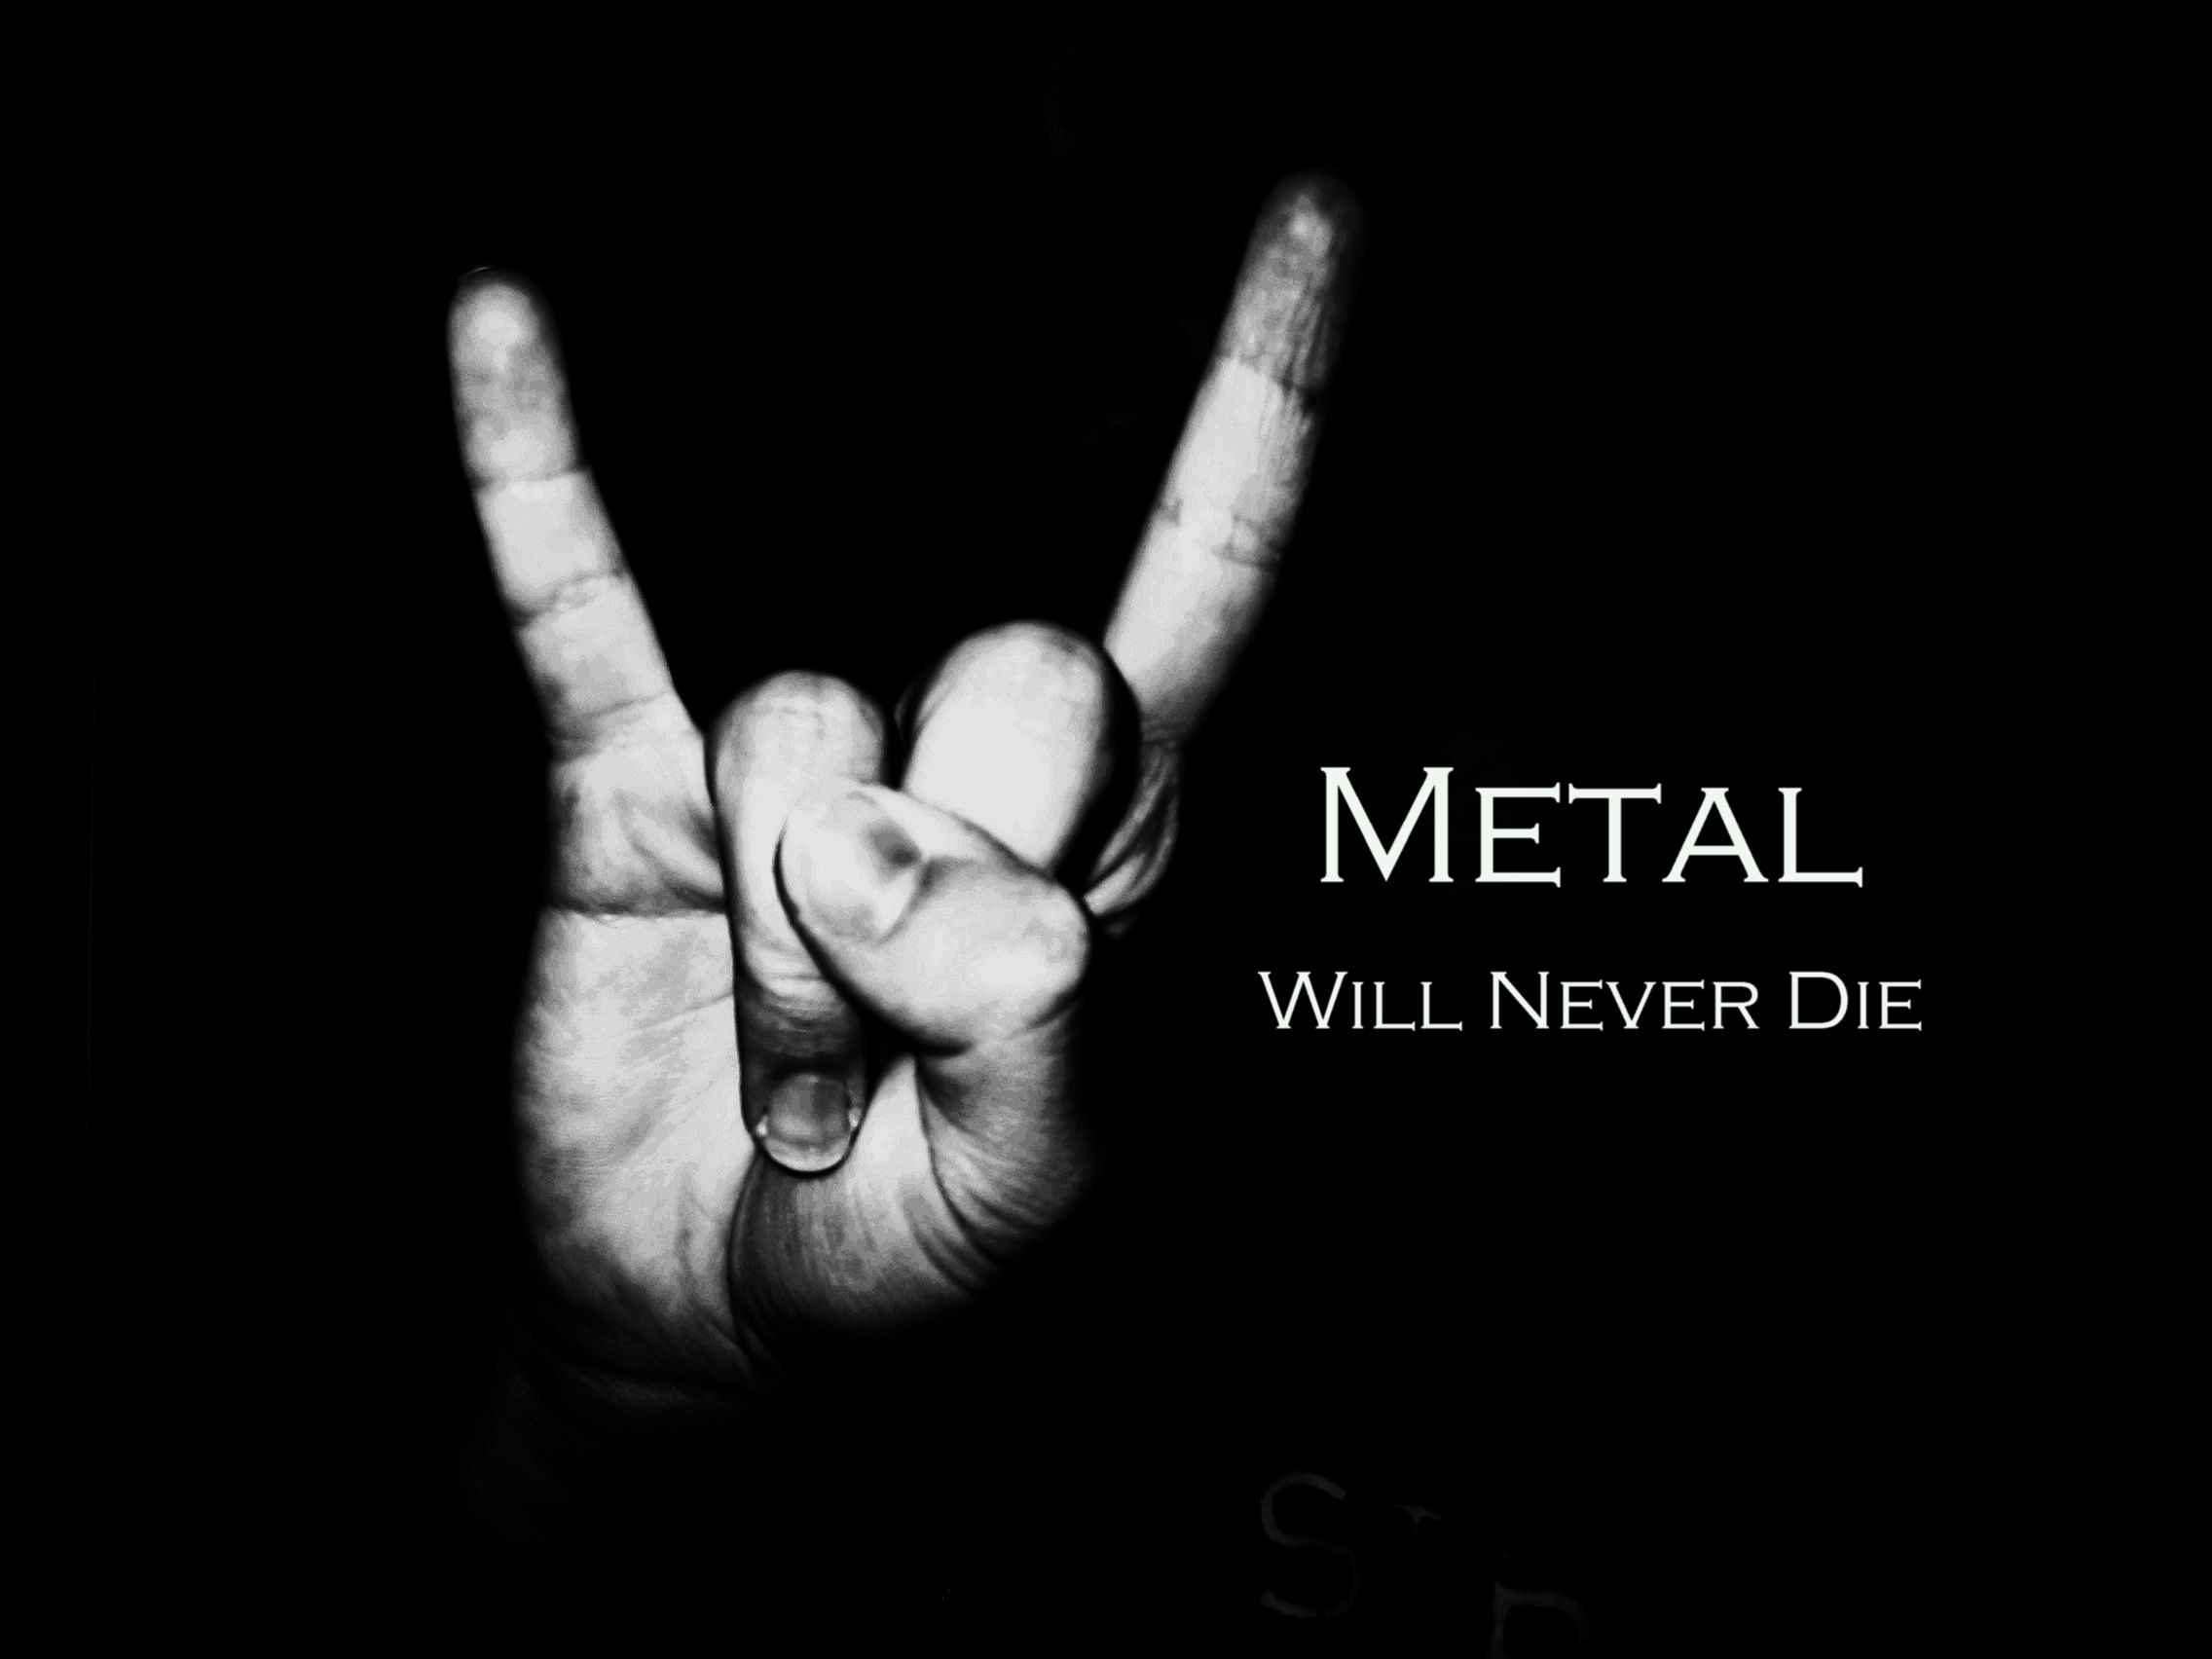 METAL will never die